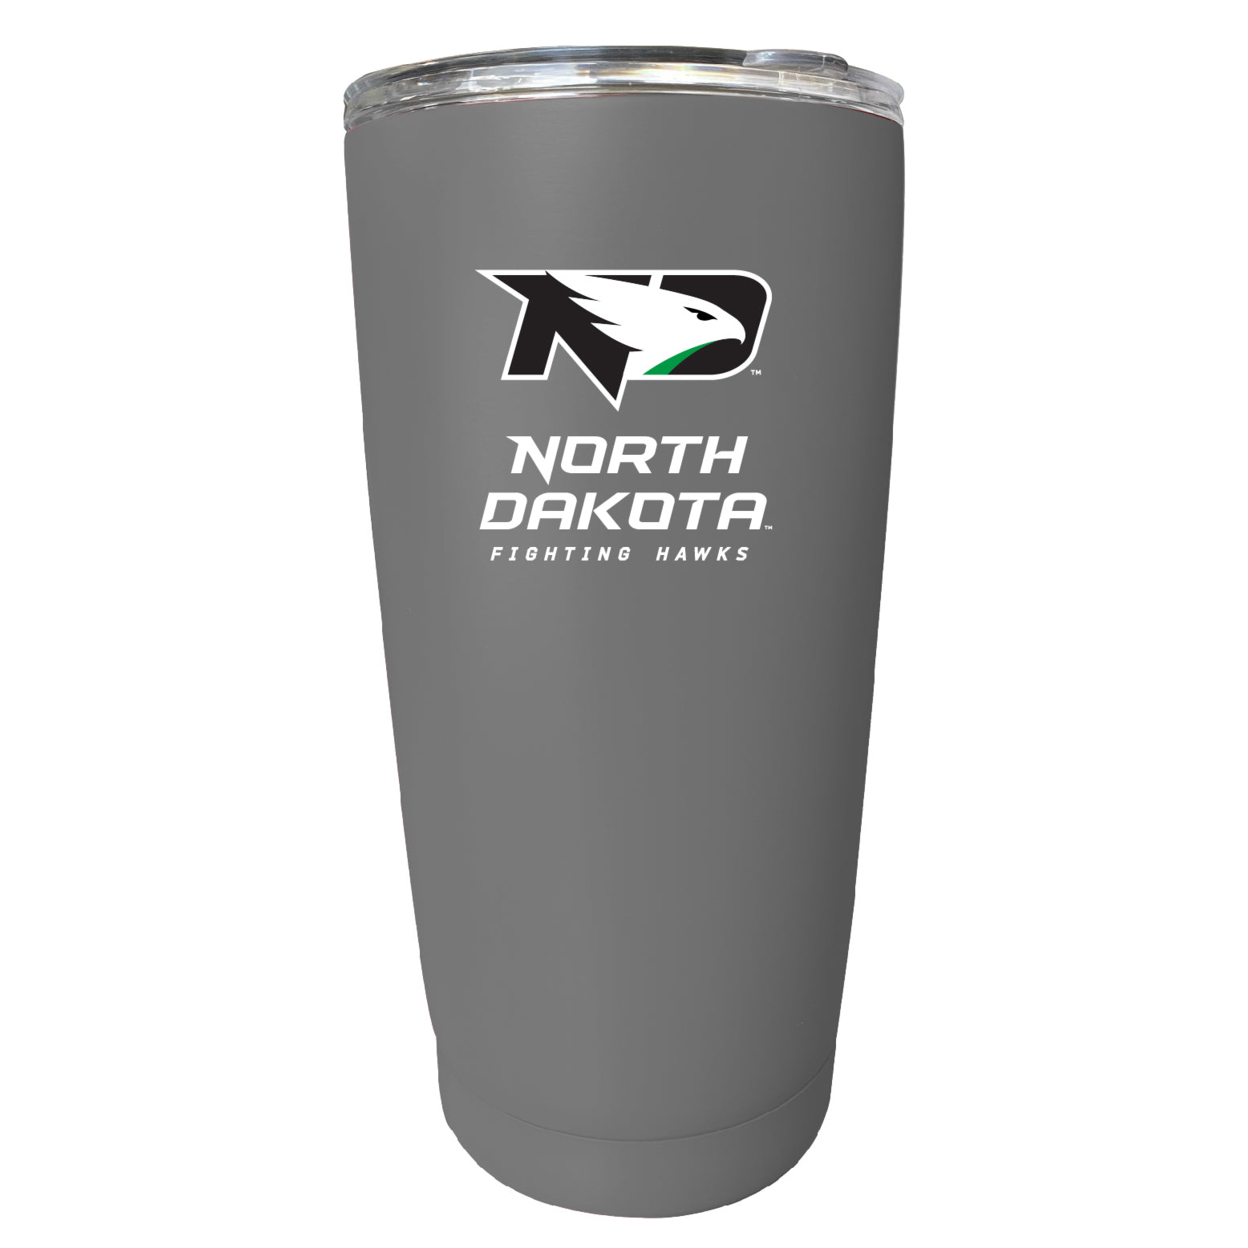 North Dakota Fighting Hawks 16 Oz Stainless Steel Insulated Tumbler - Gray